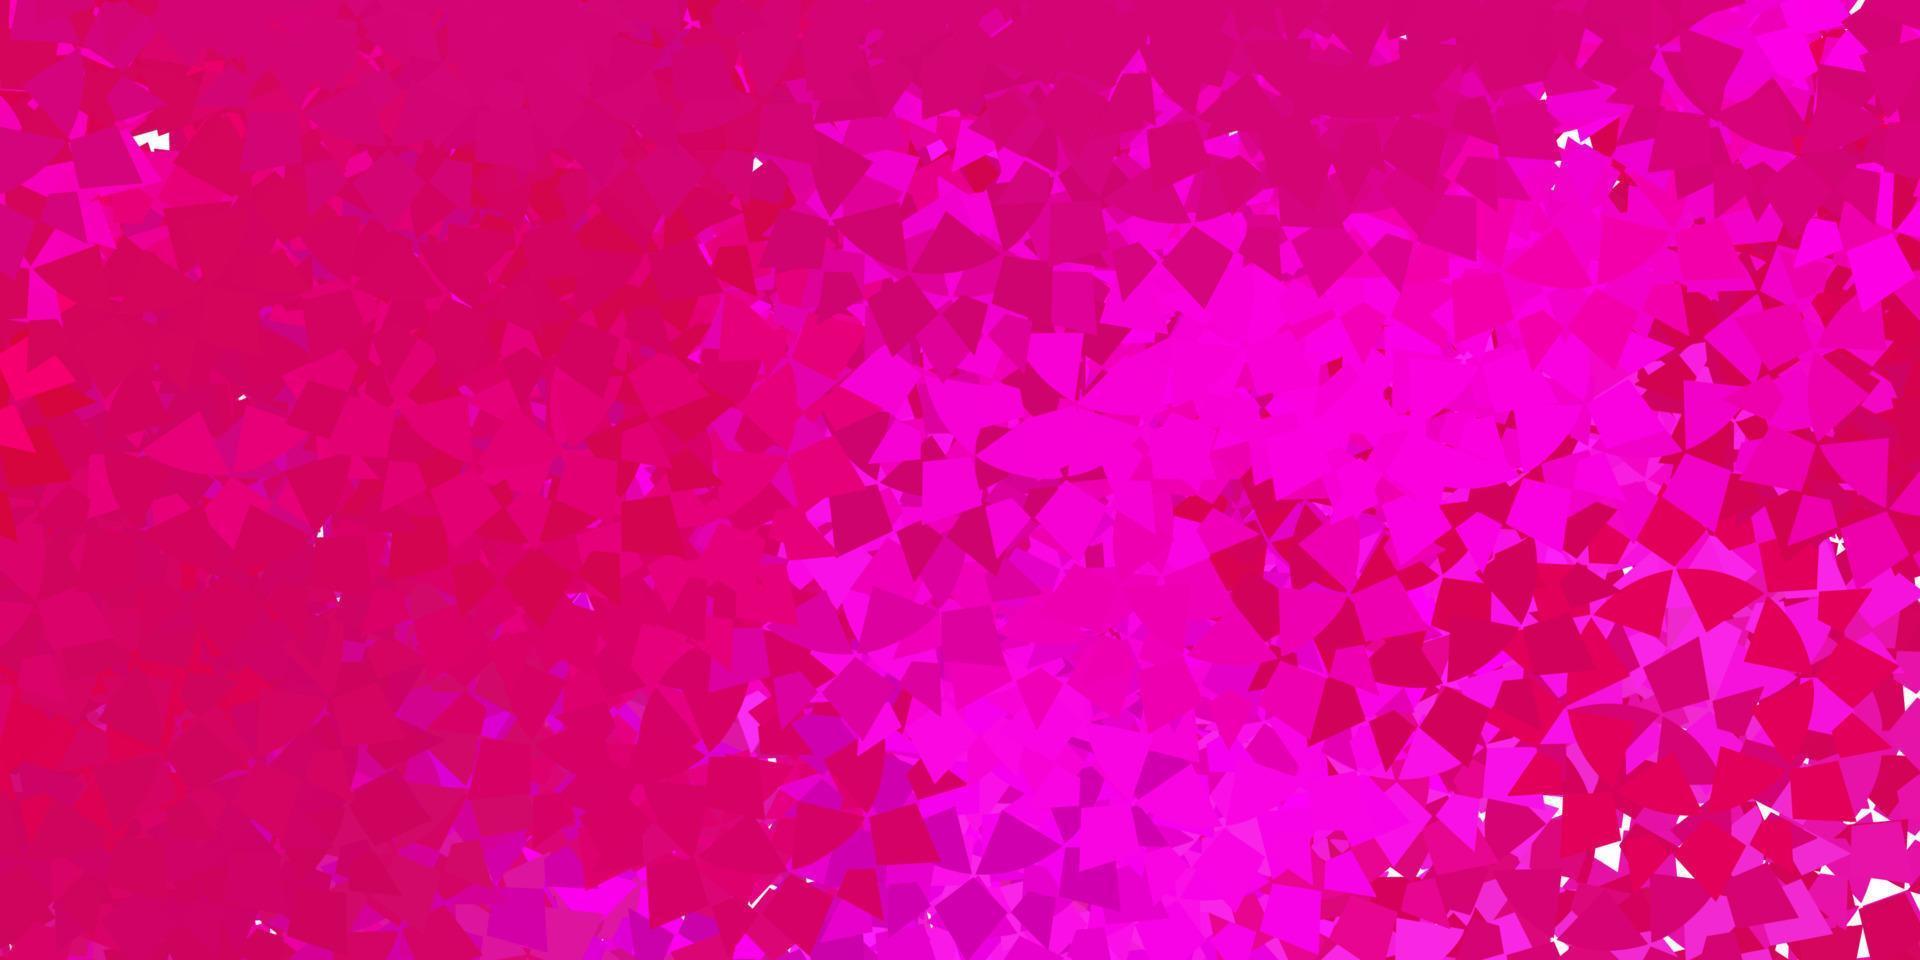 patrón de vector de color rosa oscuro con formas poligonales.